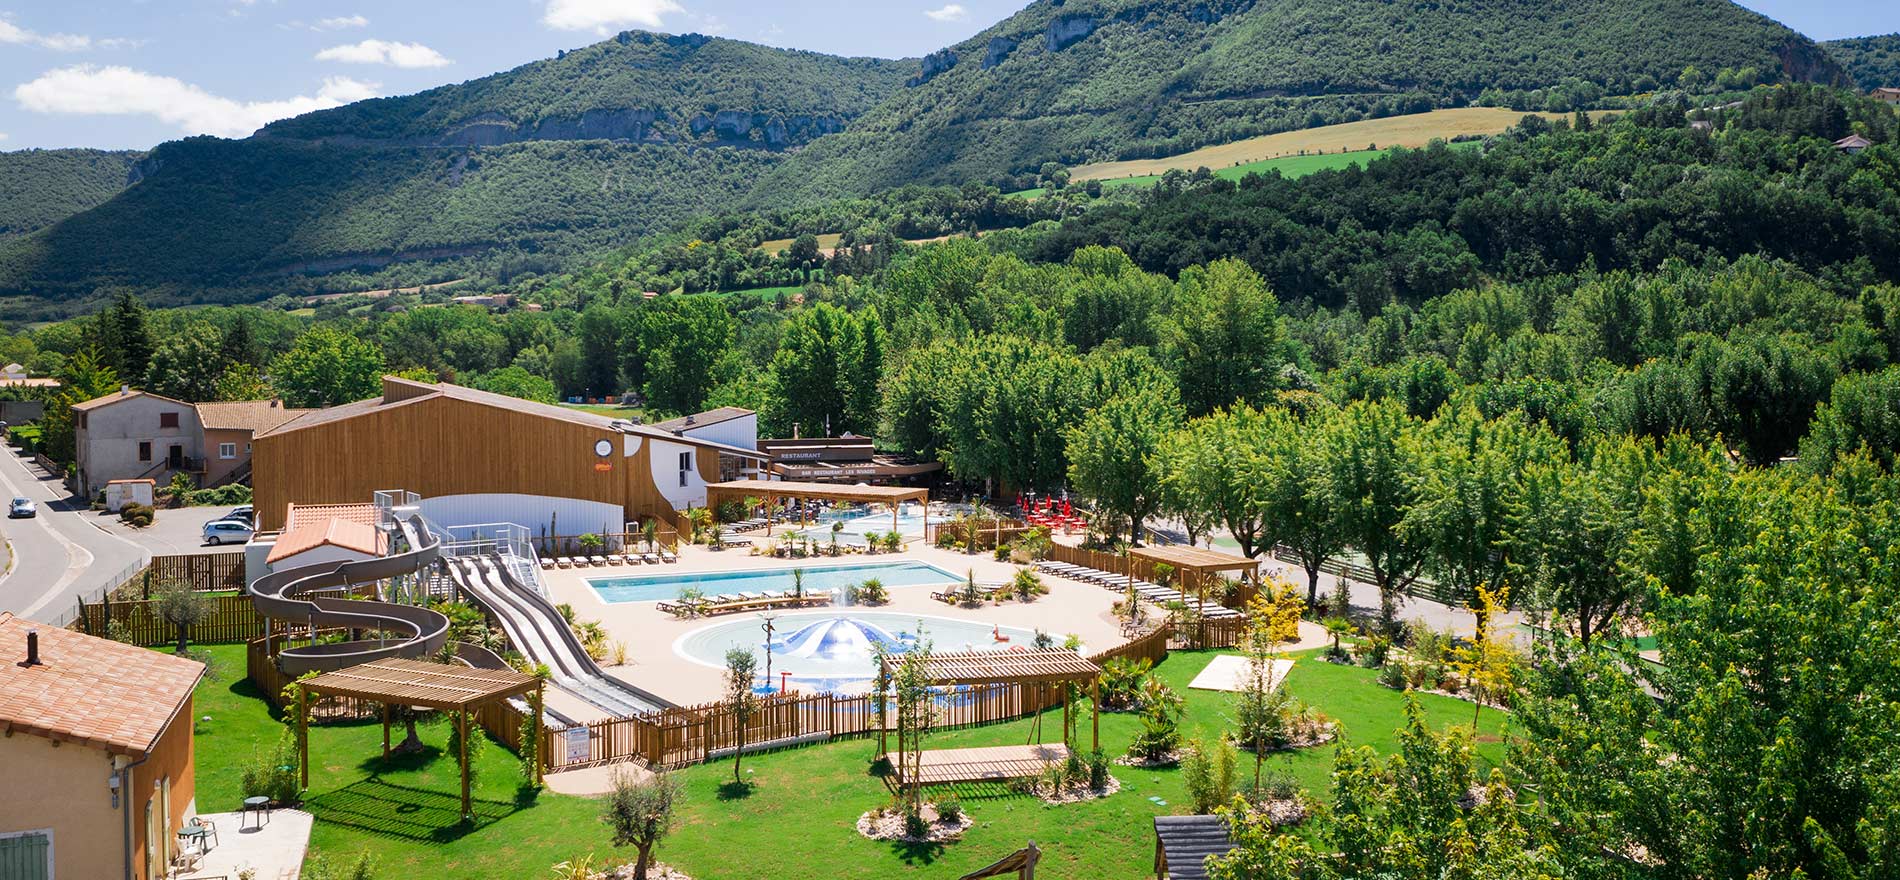 3 critères pour vivre un court séjour en camping dans l’Aveyron sans soucis